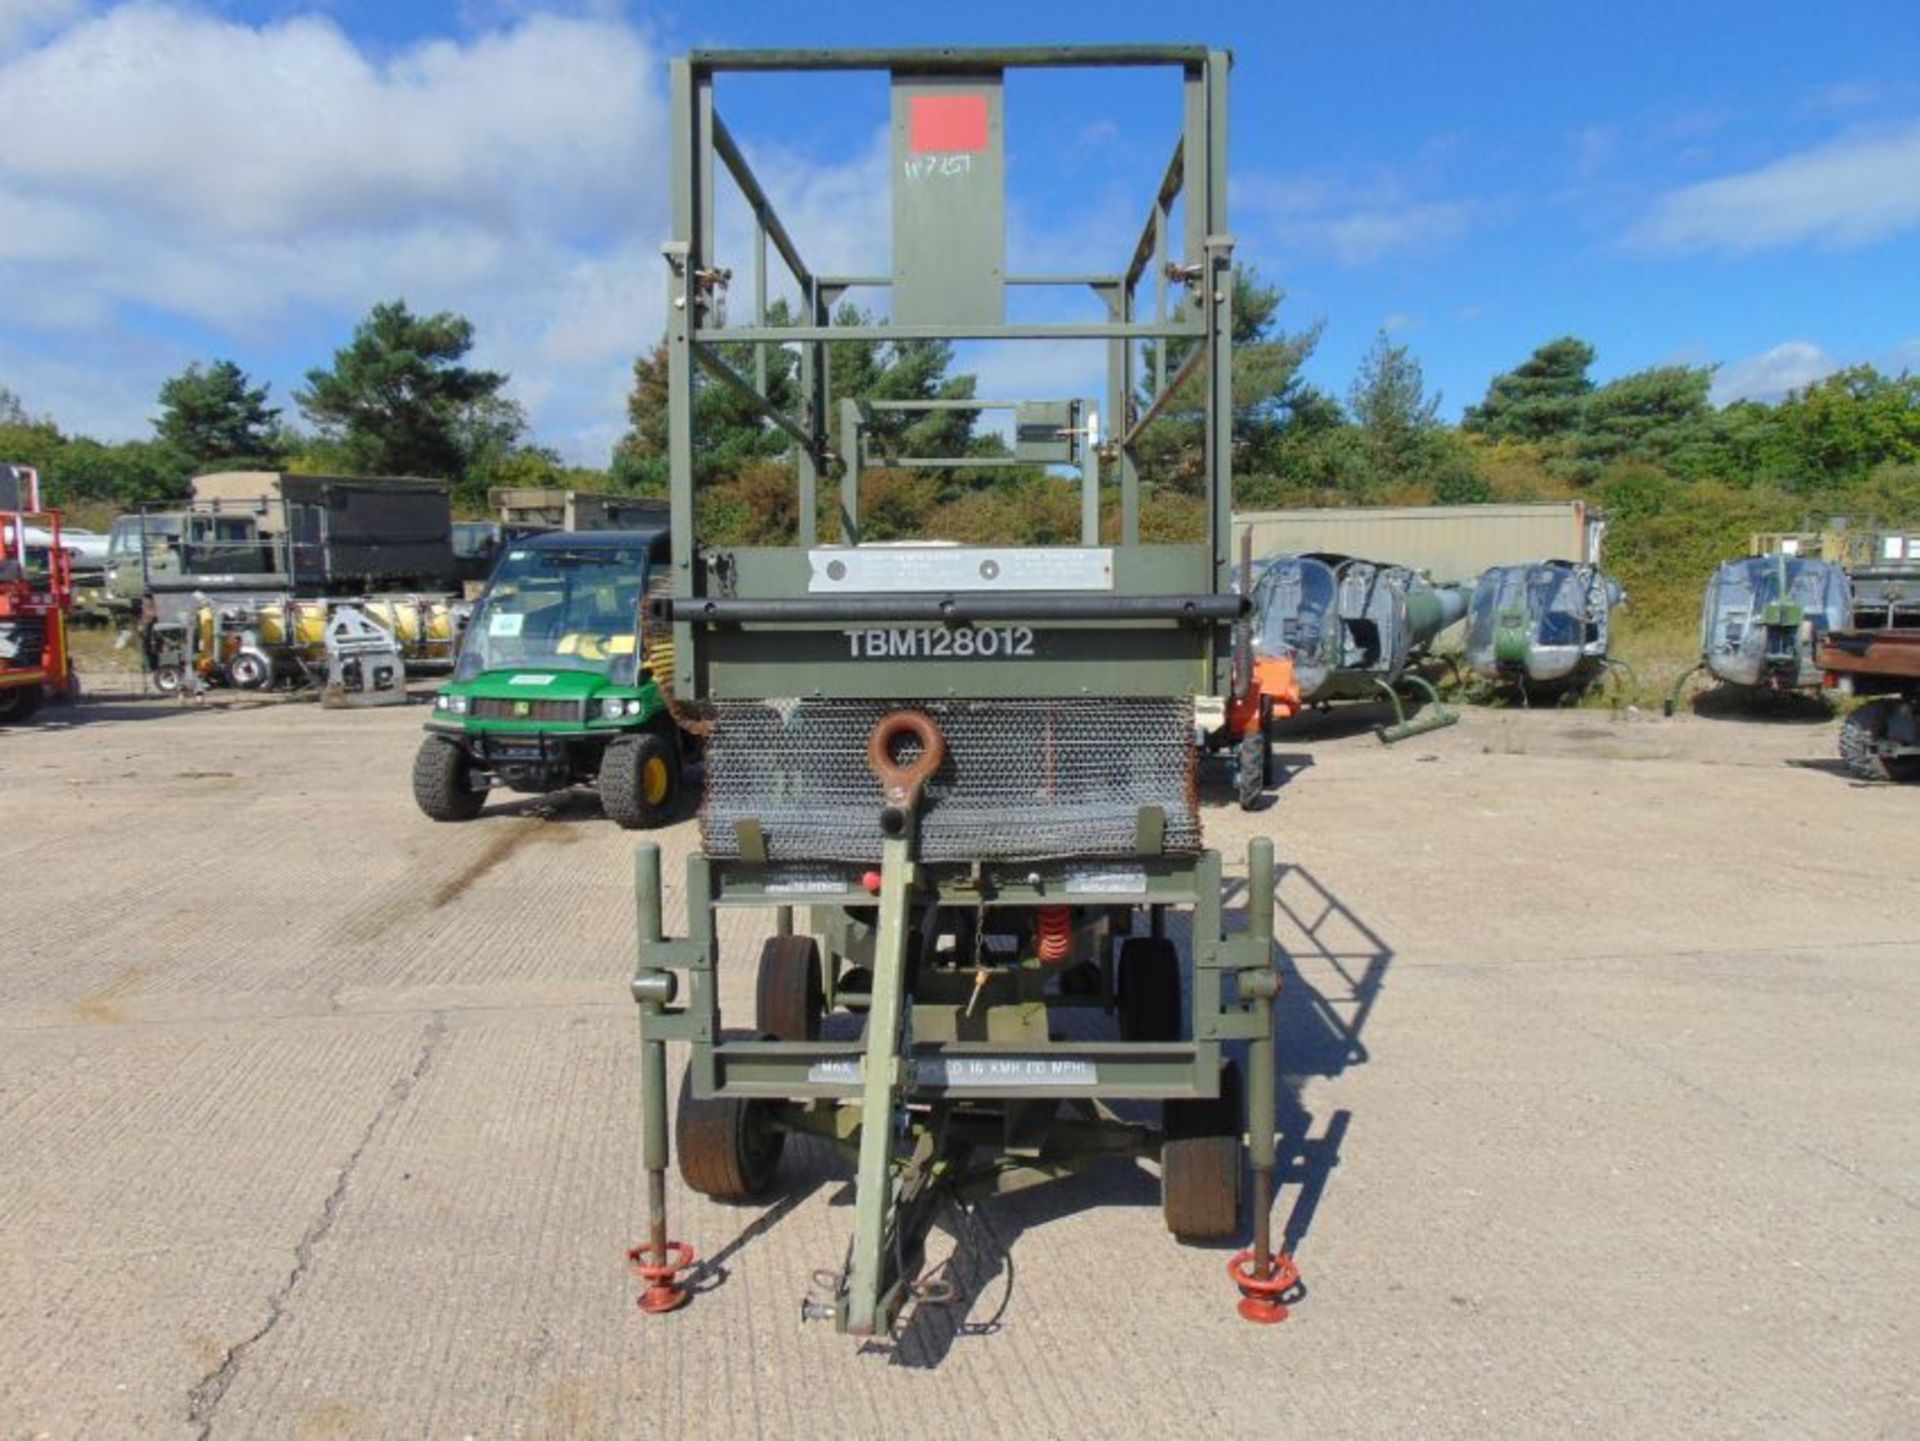 RAF Maintenance Unit UK Lift Hydraulic Access Platform SWL 272 Kgs - Image 2 of 11